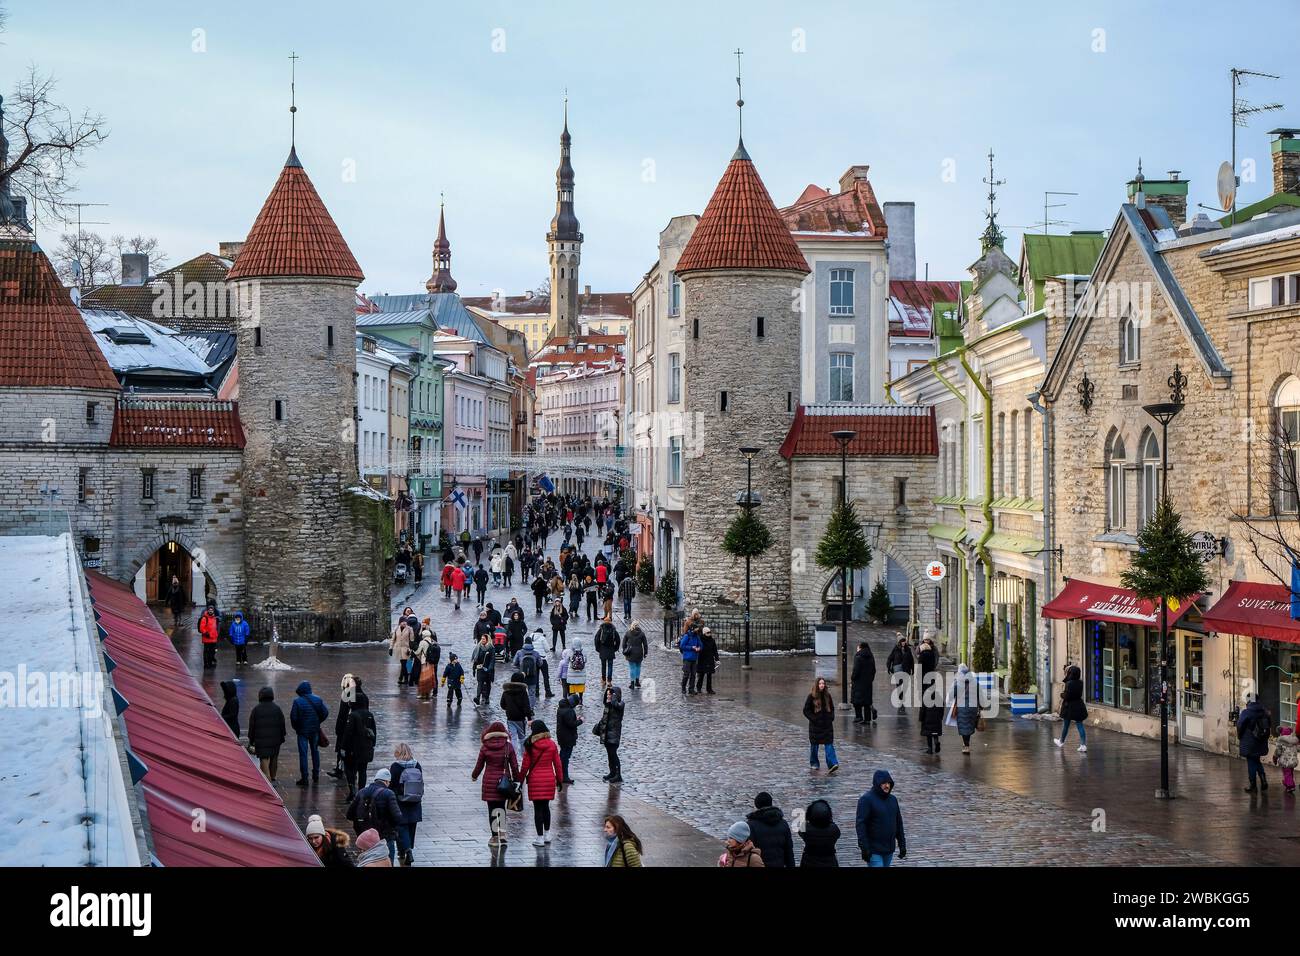 Tallinn, Estonia - la città vecchia di Tallinn, la porta di argilla, le torri di guardia della porta medievale della città Viru, il Viru è la strada principale dello shopping della città, dietro la torre del municipio nella piazza del municipio. Foto Stock